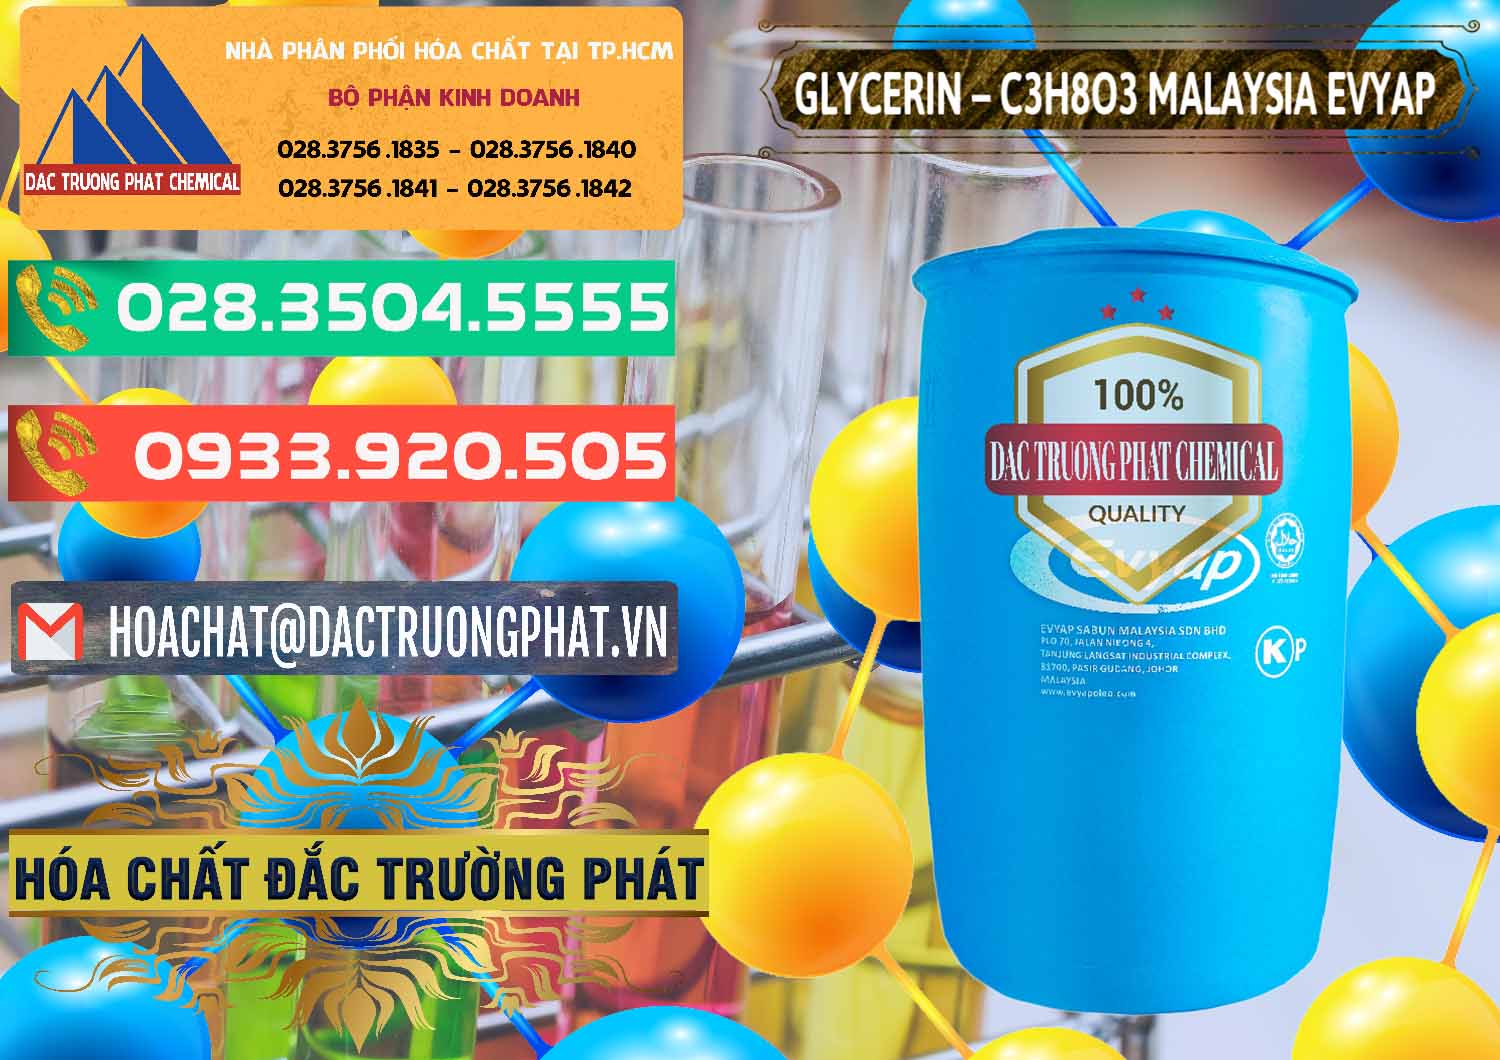 Nơi chuyên bán & cung ứng Glycerin – C3H8O3 Malaysia Evyap - 0066 - Chuyên phân phối ( cung ứng ) hóa chất tại TP.HCM - congtyhoachat.com.vn